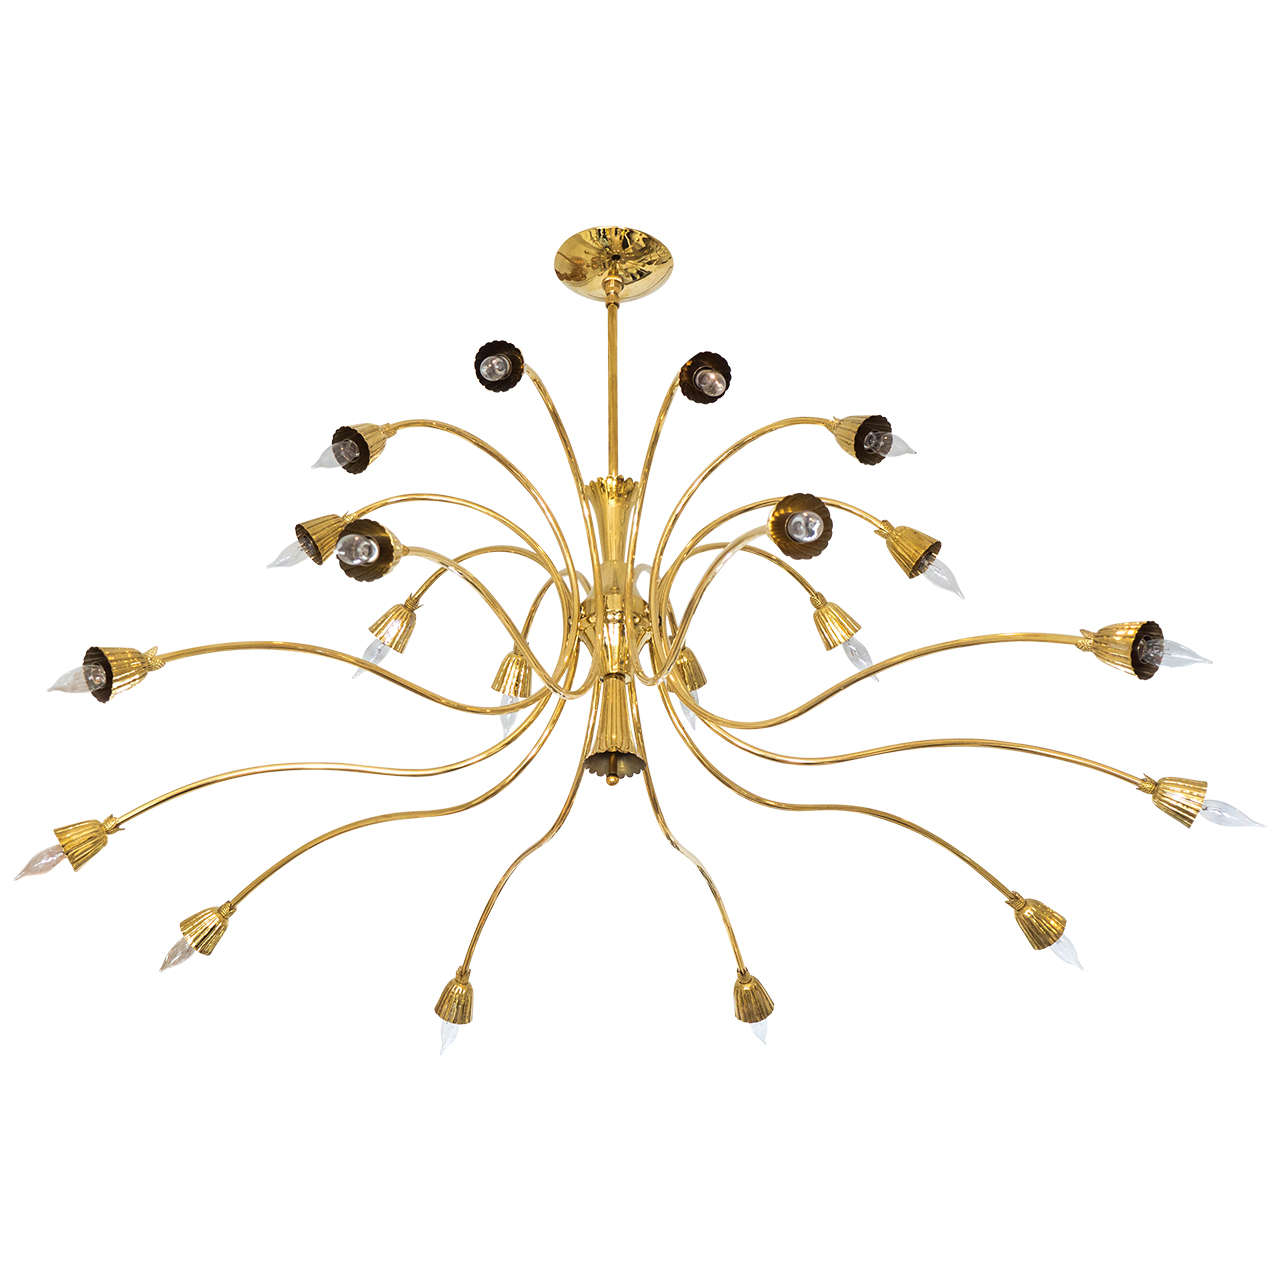 Brass two-tier curvilinear chandelier